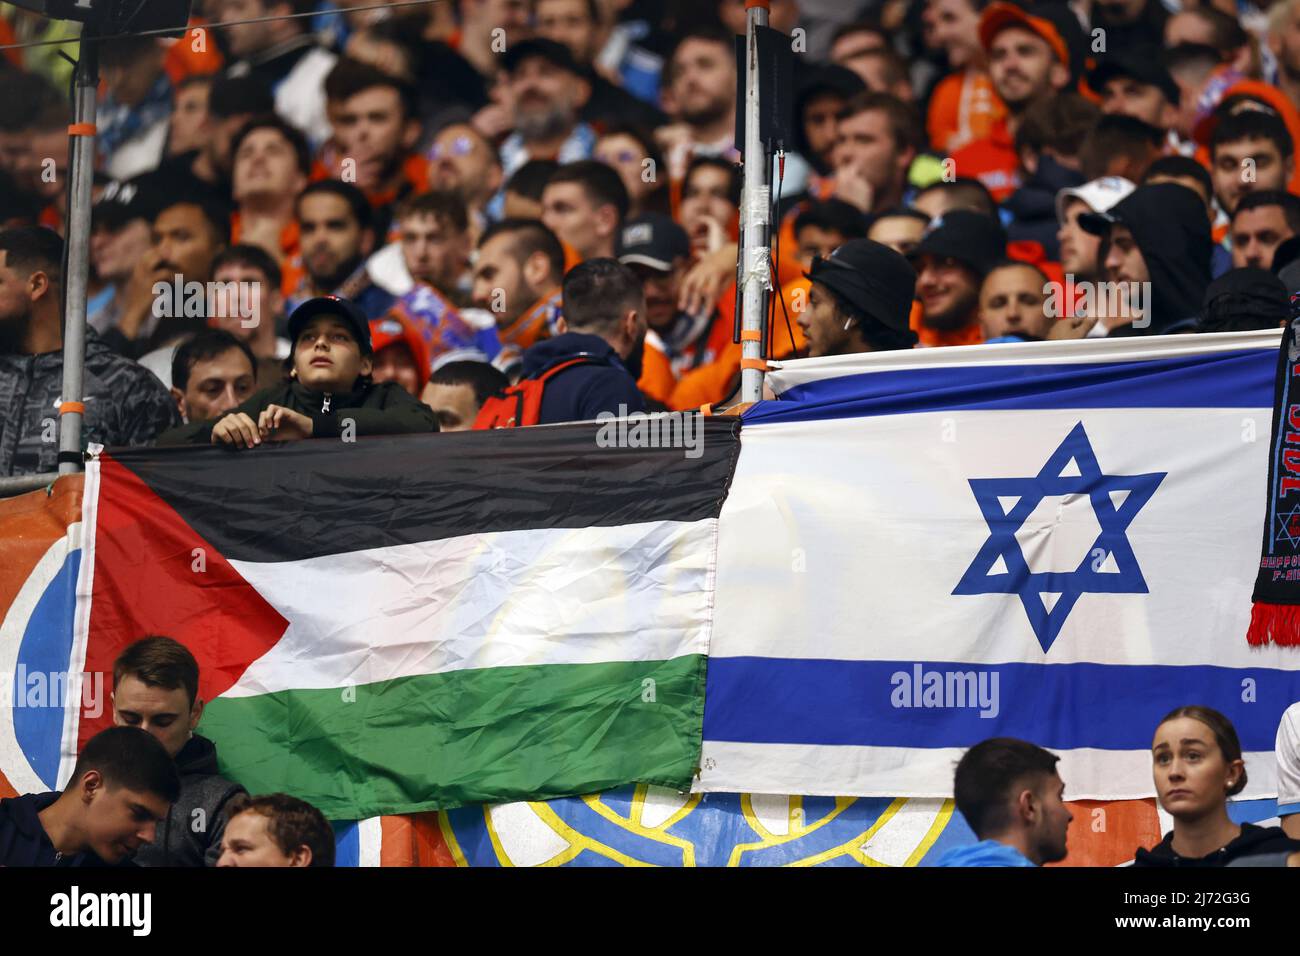 MARSEILLE - drapeau palestinien et israélien lors du match semi-fin de la Ligue des conférences de l'UEFA entre l'Olympique de Marseille et Feyenoord au Stade vélodrome le 5 mai 2022 à Marseille, France. ANP MAURICE VAN STEEN Banque D'Images